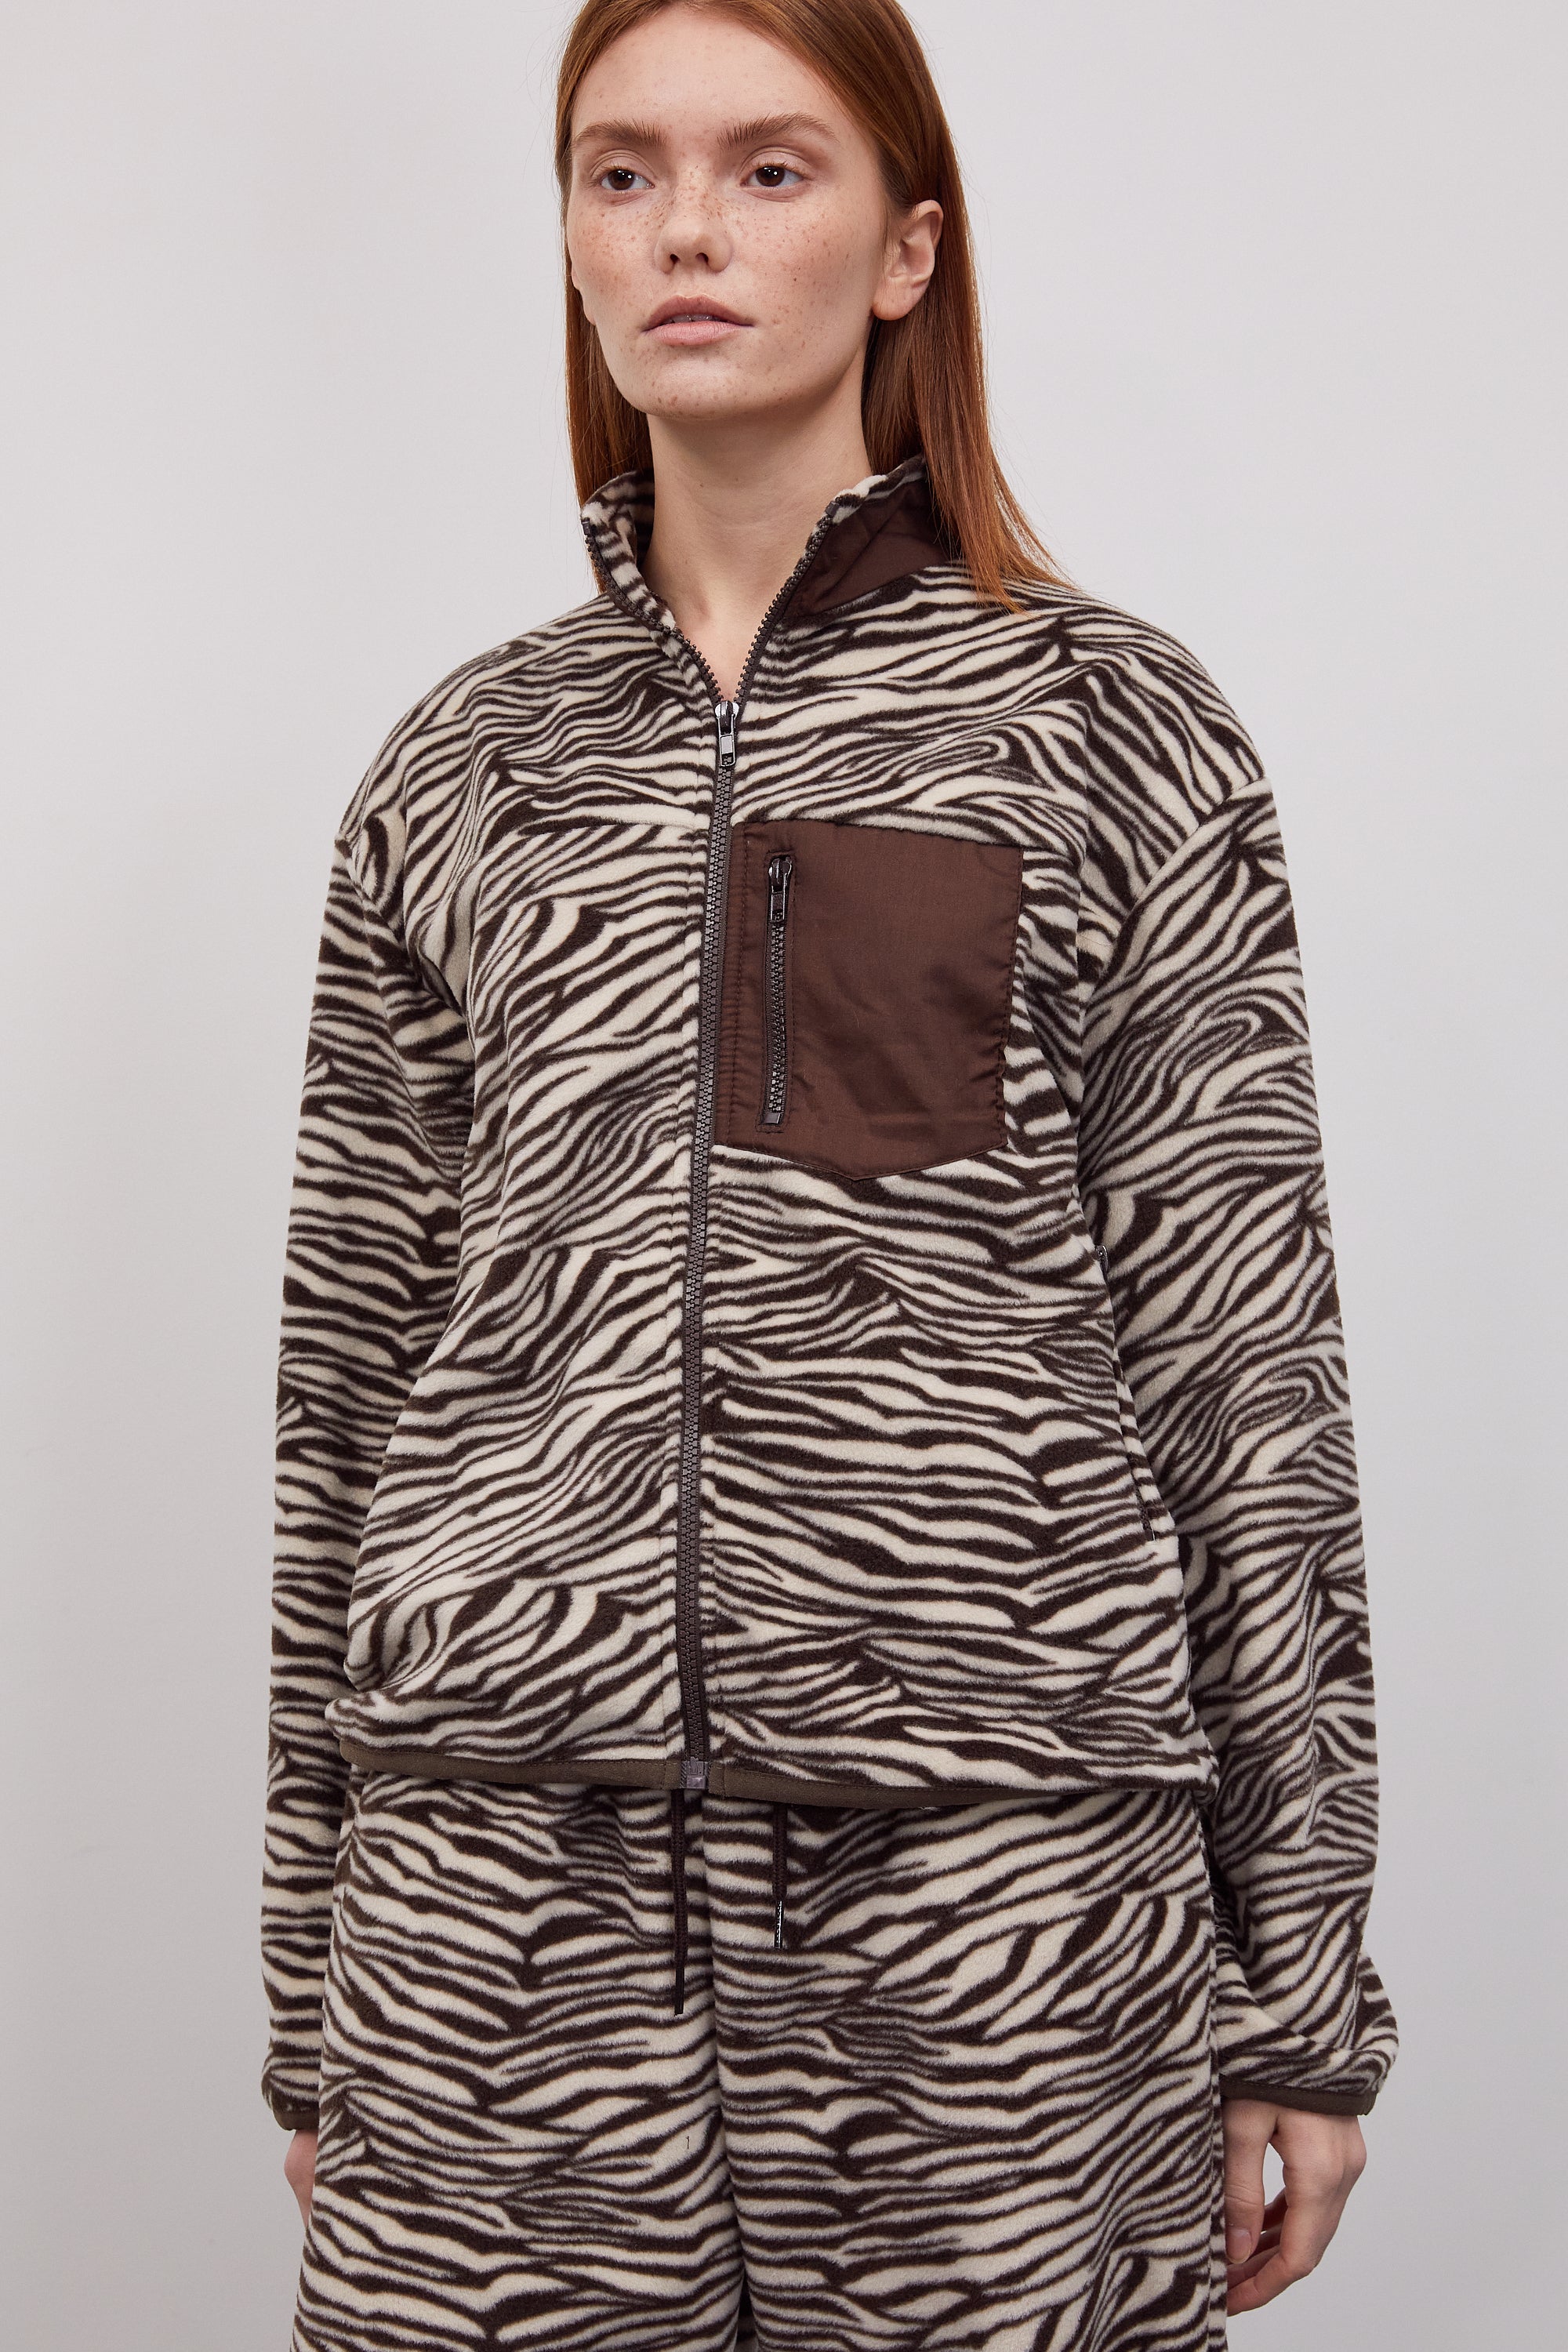 Zebra Print Fleece Zip-Up Jacket, Brown